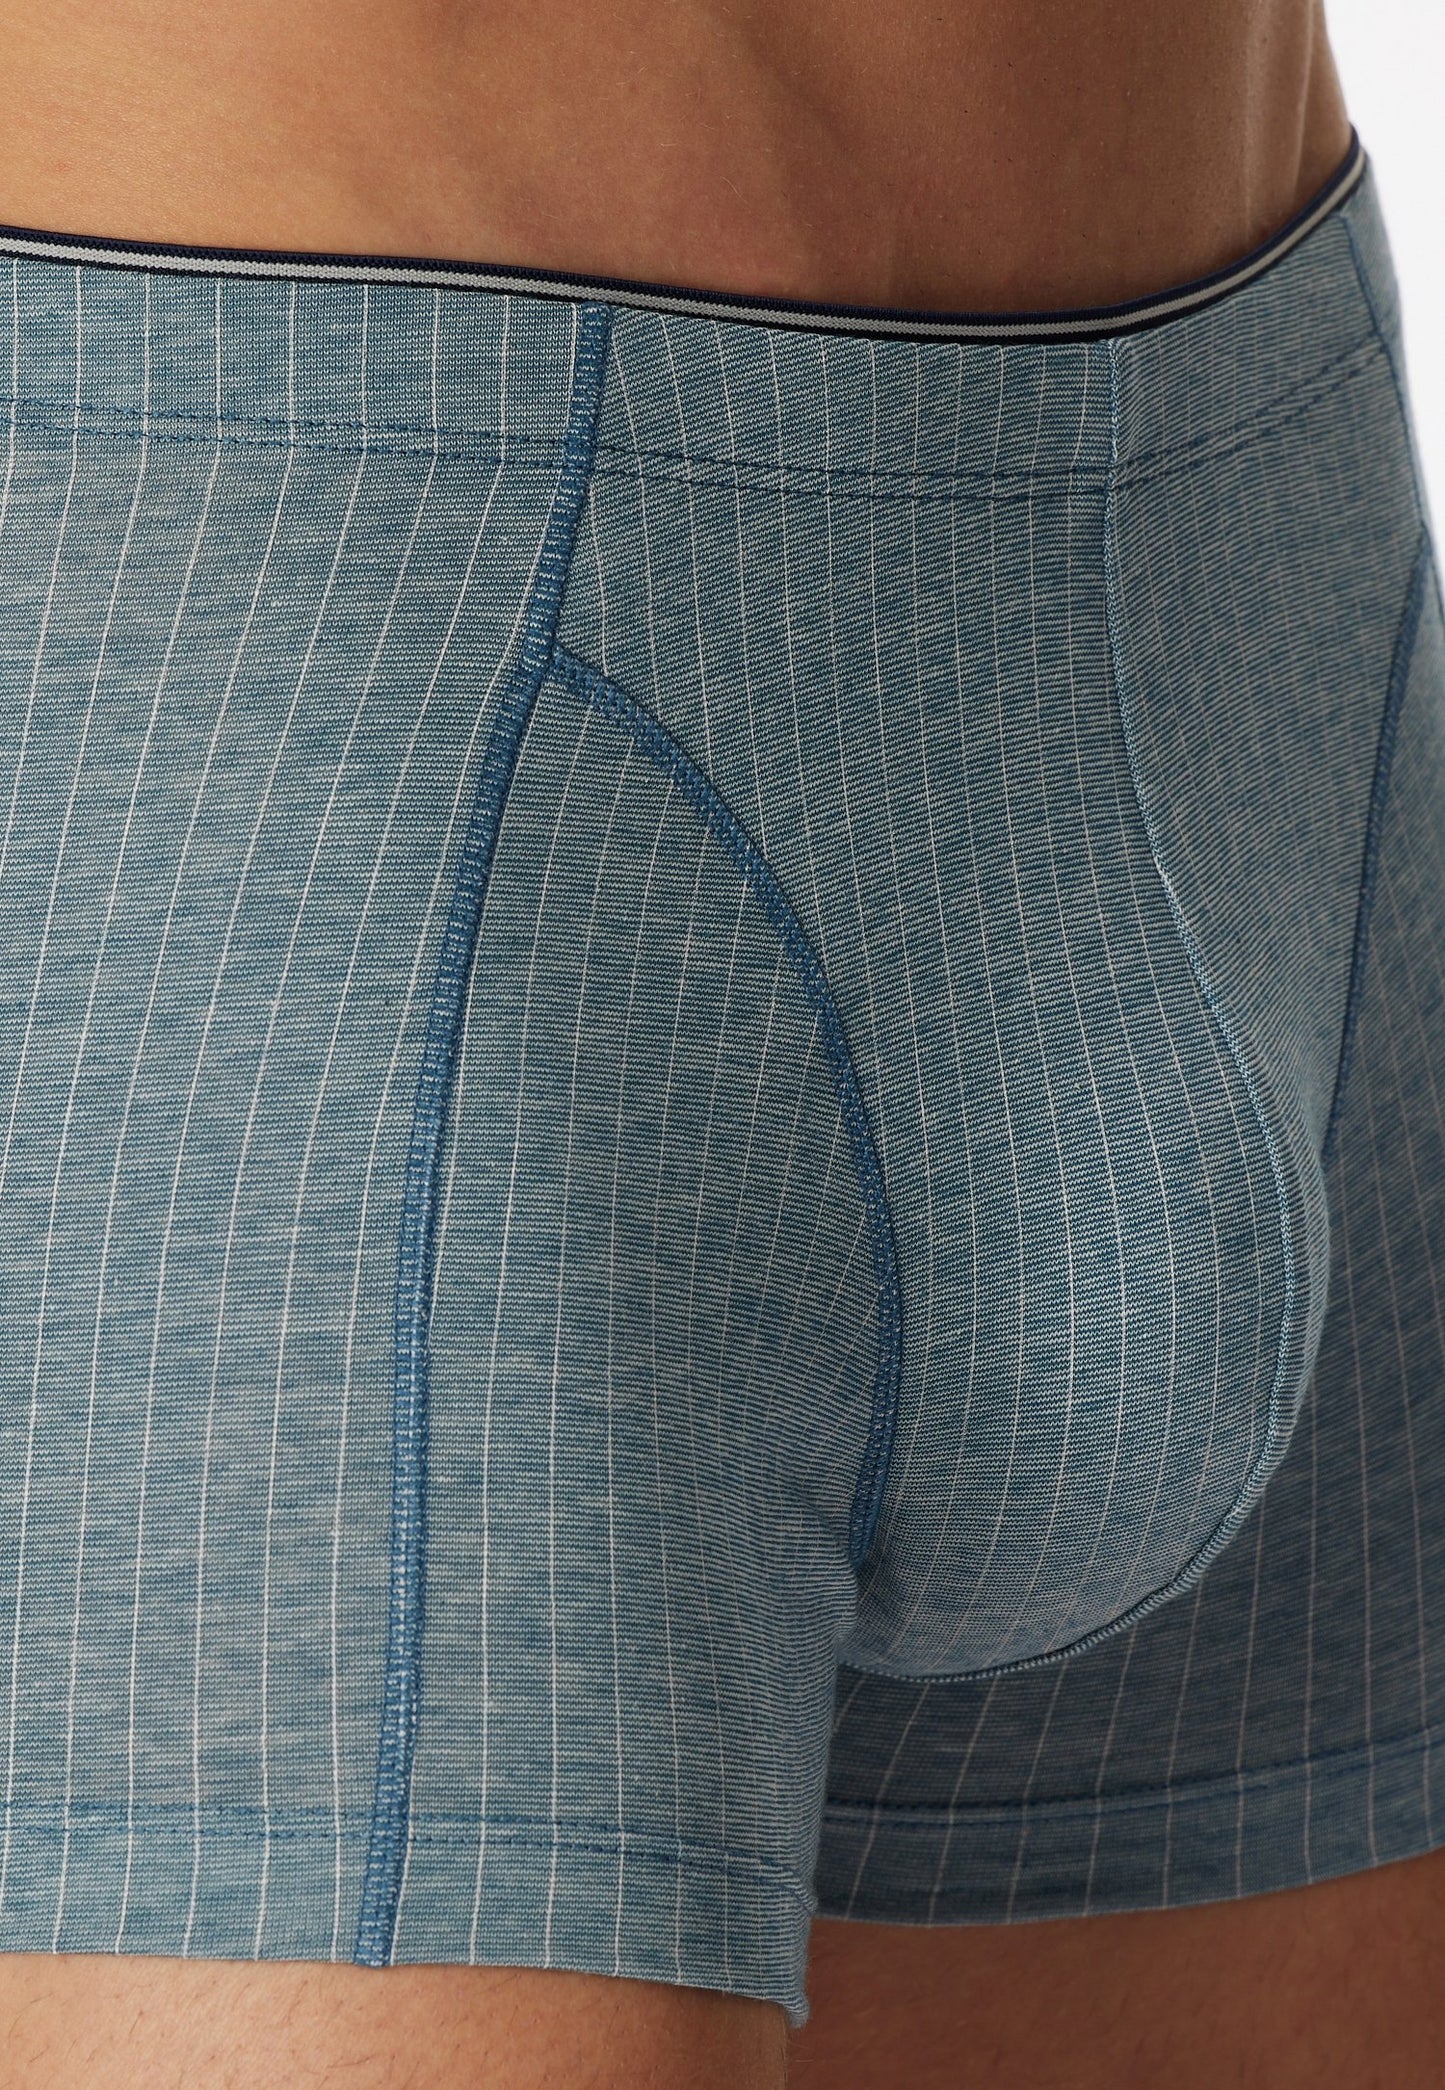 Shorts (Jeansblau)